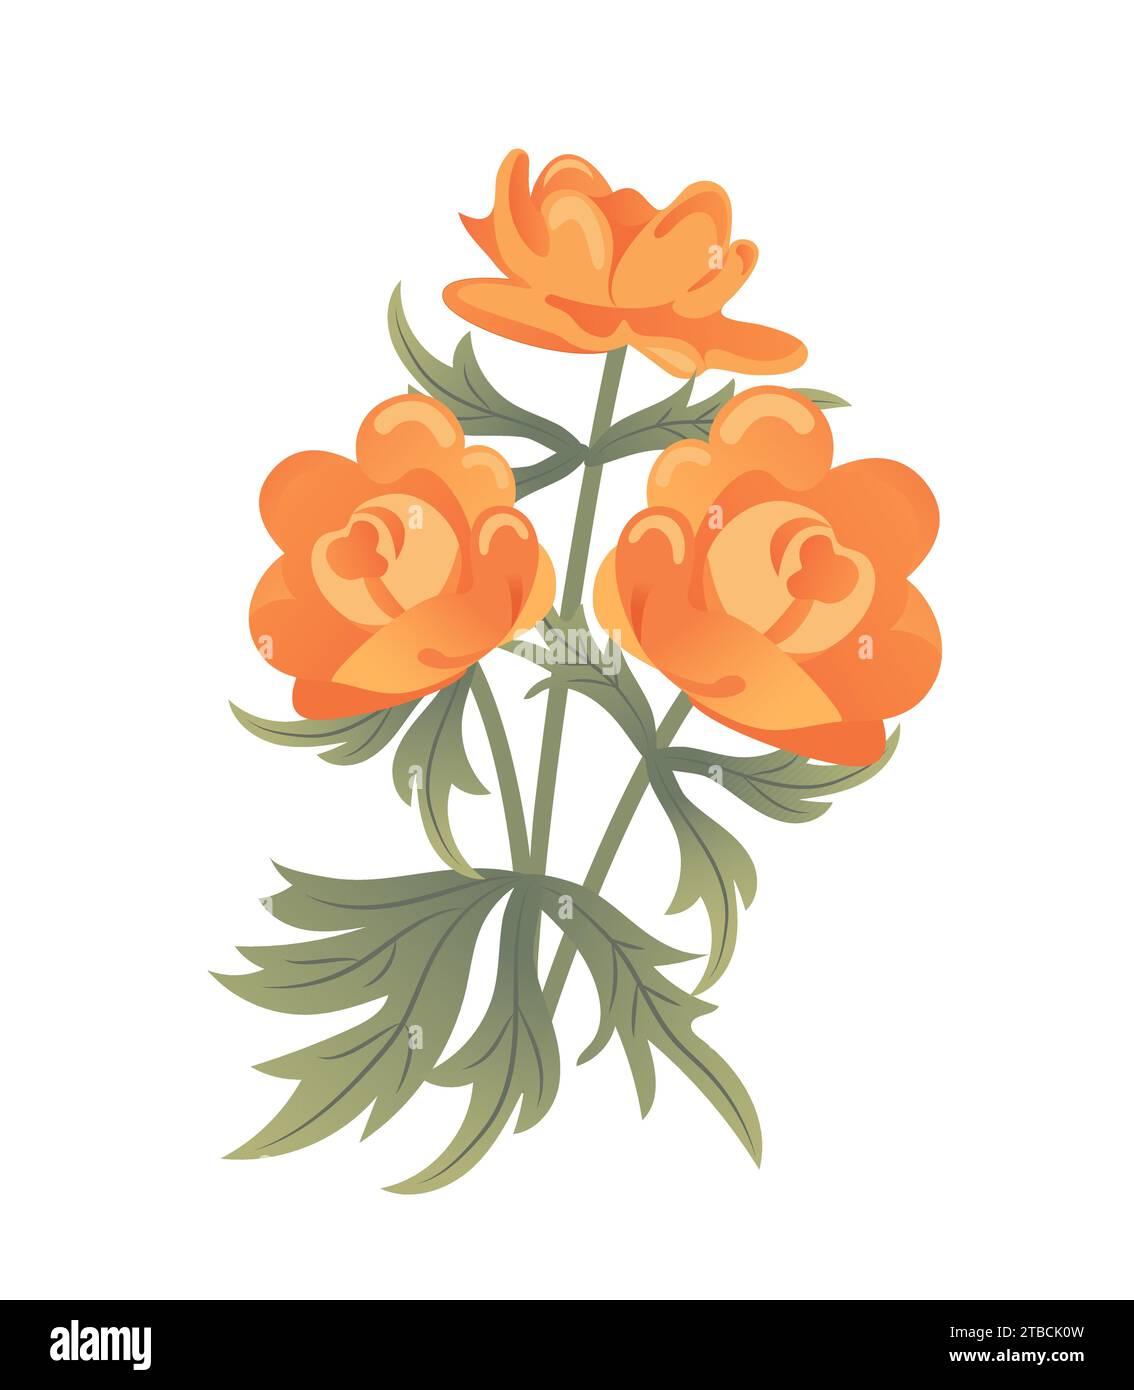 Trollius europaeus, asiaticus, globe jaune fleurs alpines. Illustration botanique dans le style plat, plante. Pour les autocollants de Pâques, affiches, carte postale Illustration de Vecteur